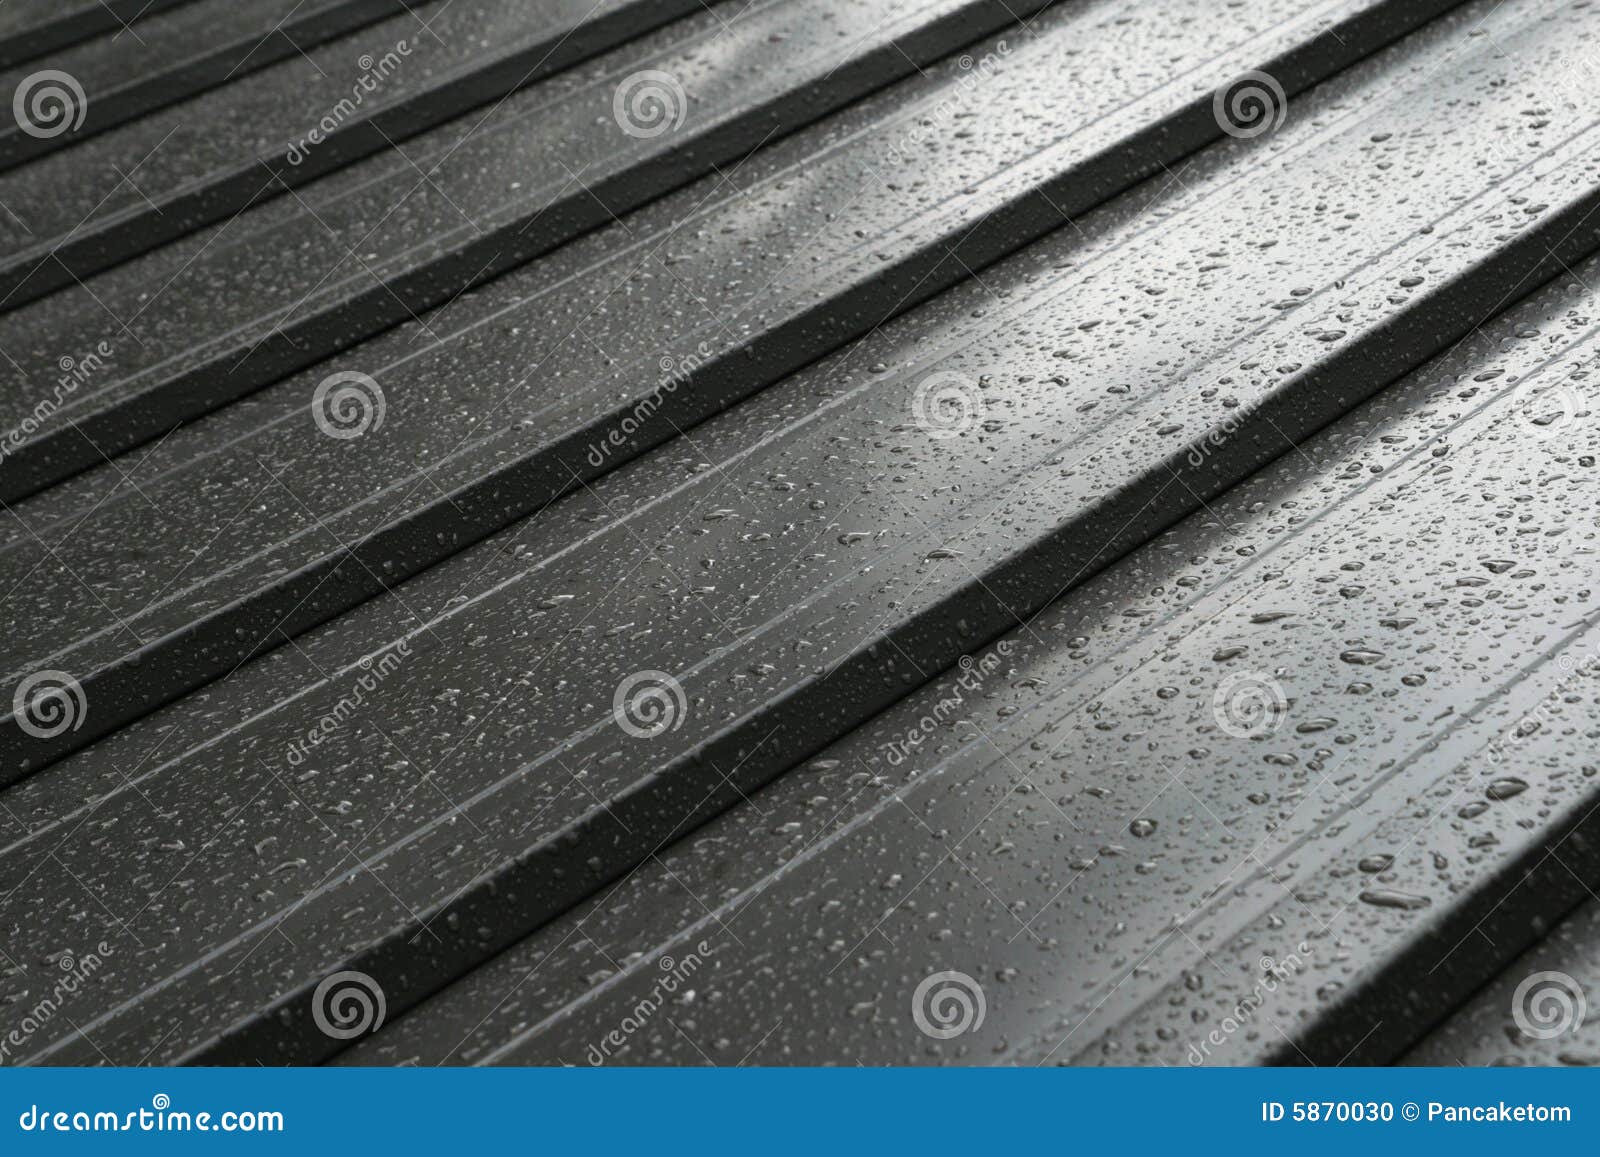 wet metal roof detail